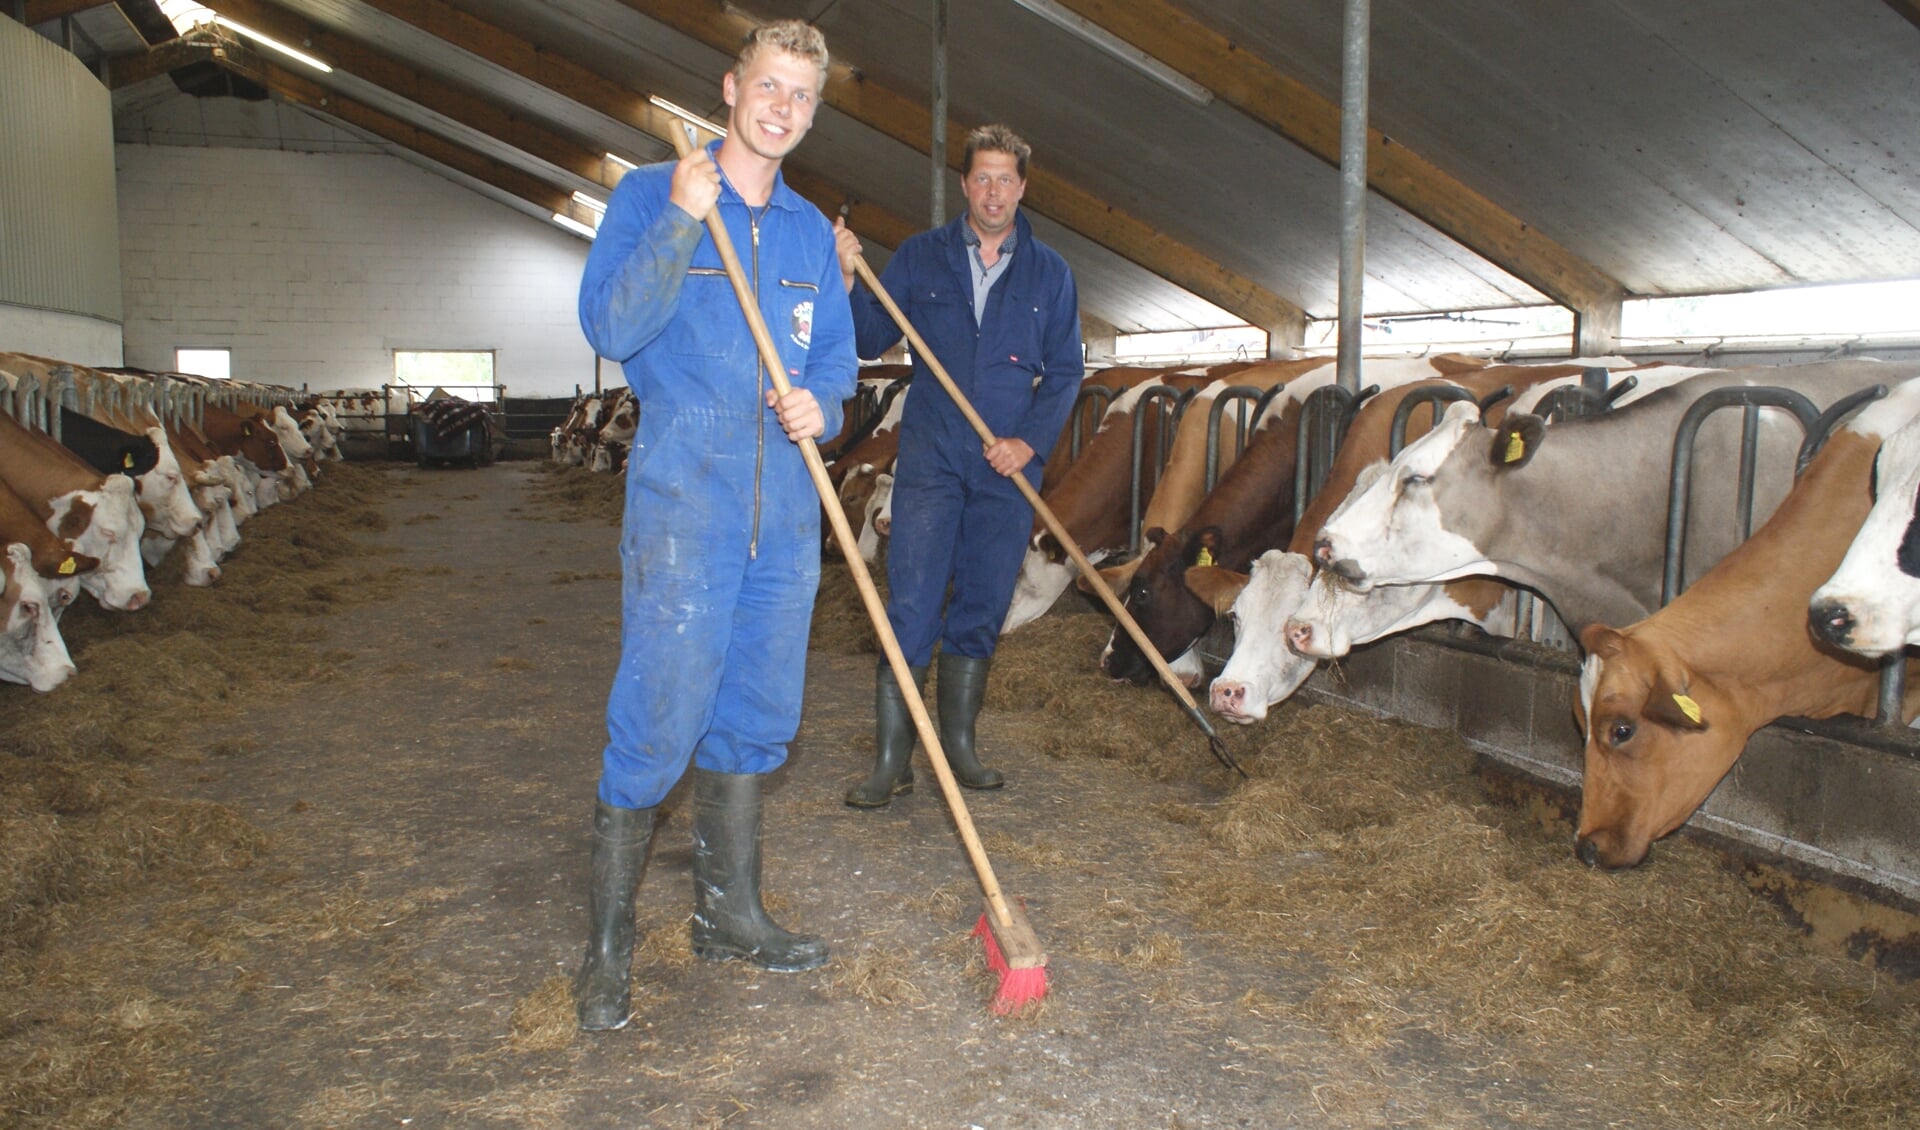 Peter en vader Freek van Vliet hielden de koeien met de hitte op stal maar de problemen zijn nog niet over. Foto: VSK